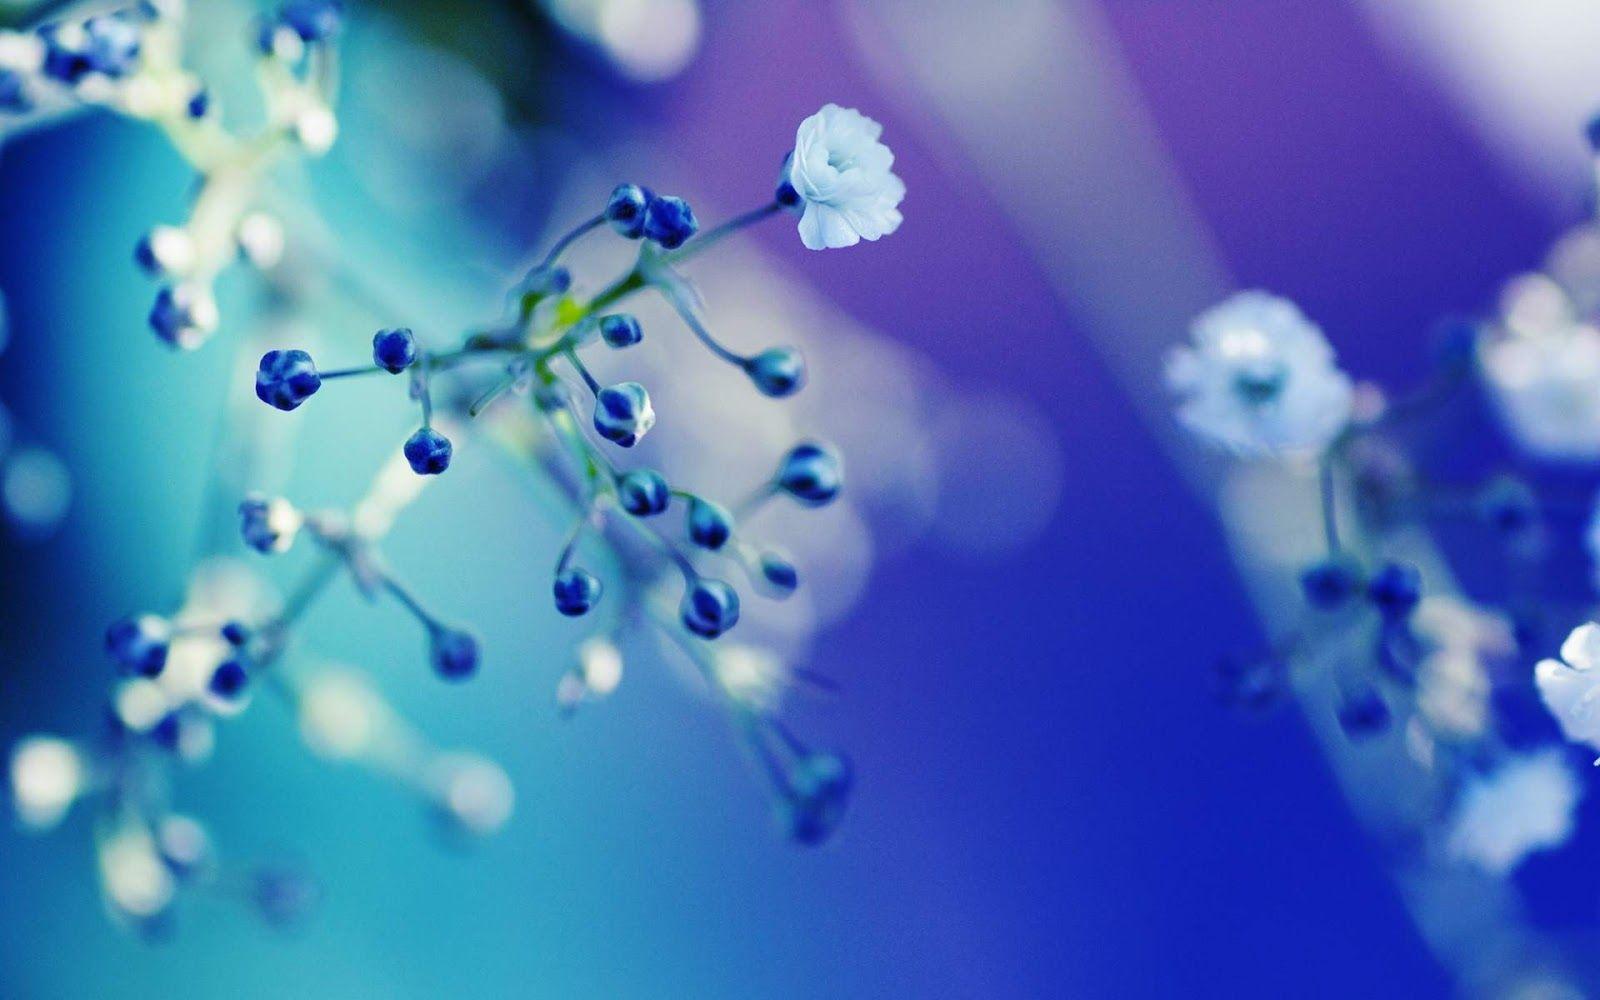 Cute Blue Flower. IPhone Wallpaper